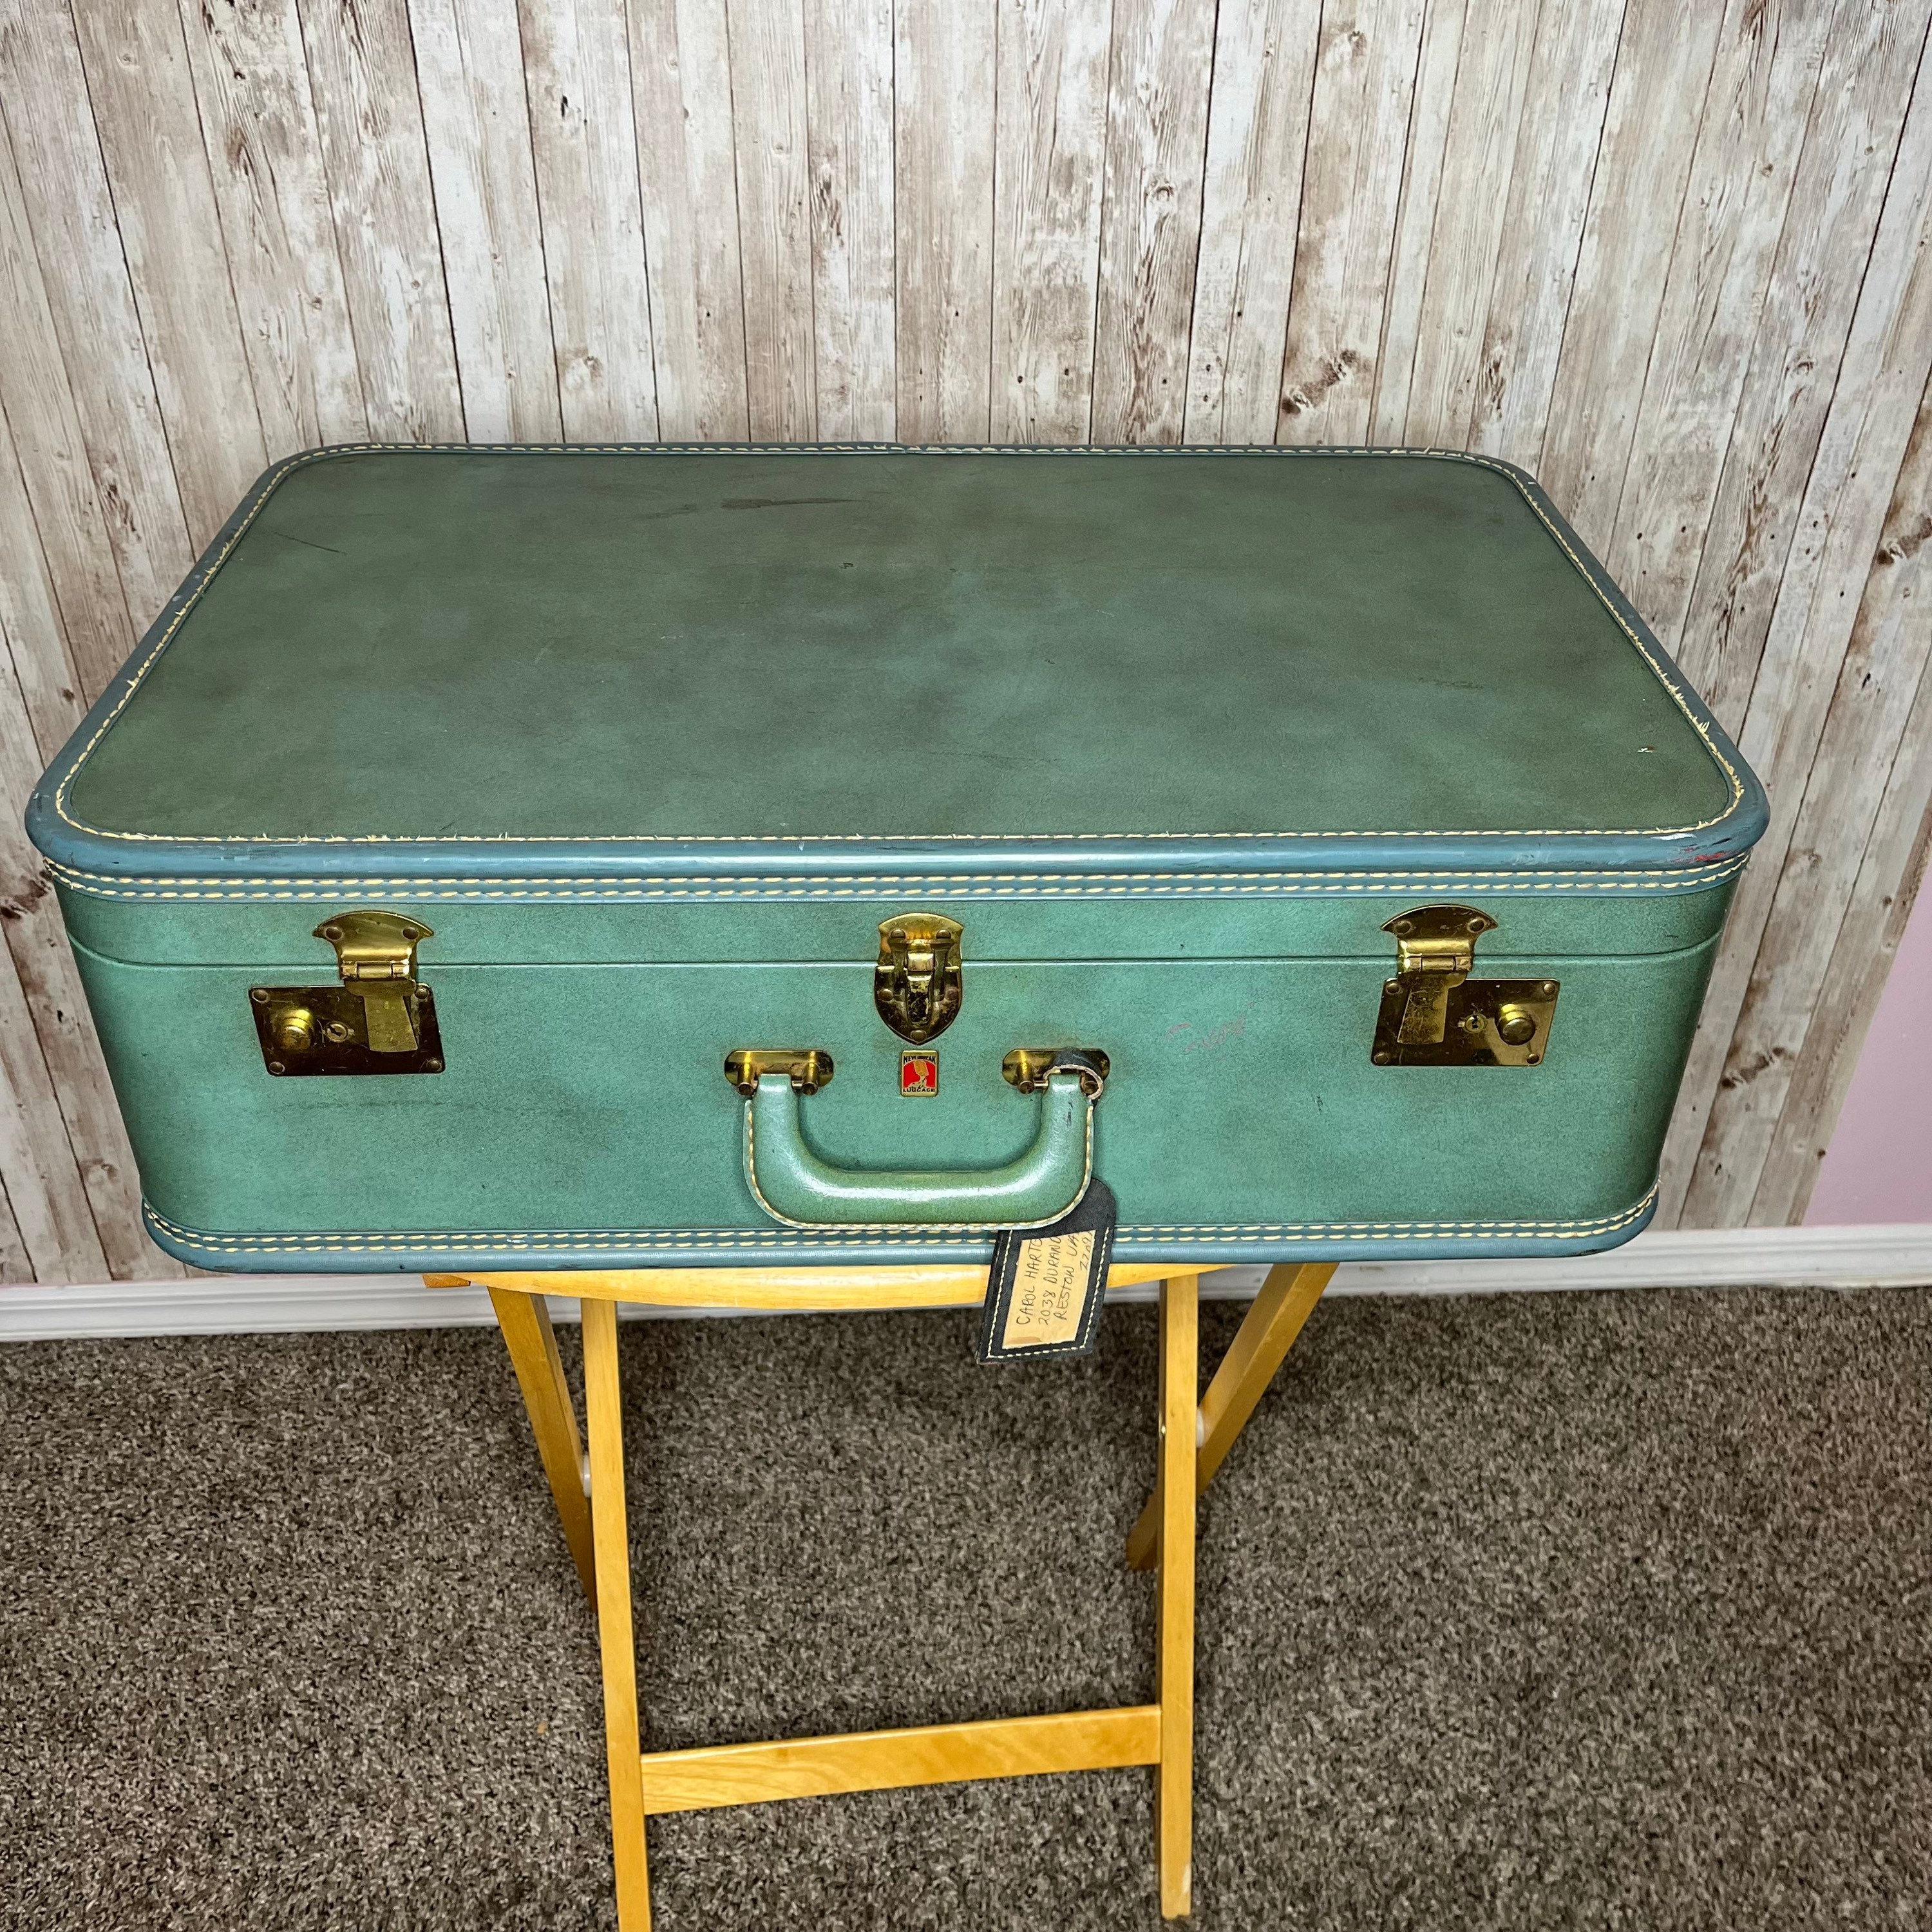 Vintage Suitcase Prop Set - Denny Manufacturing